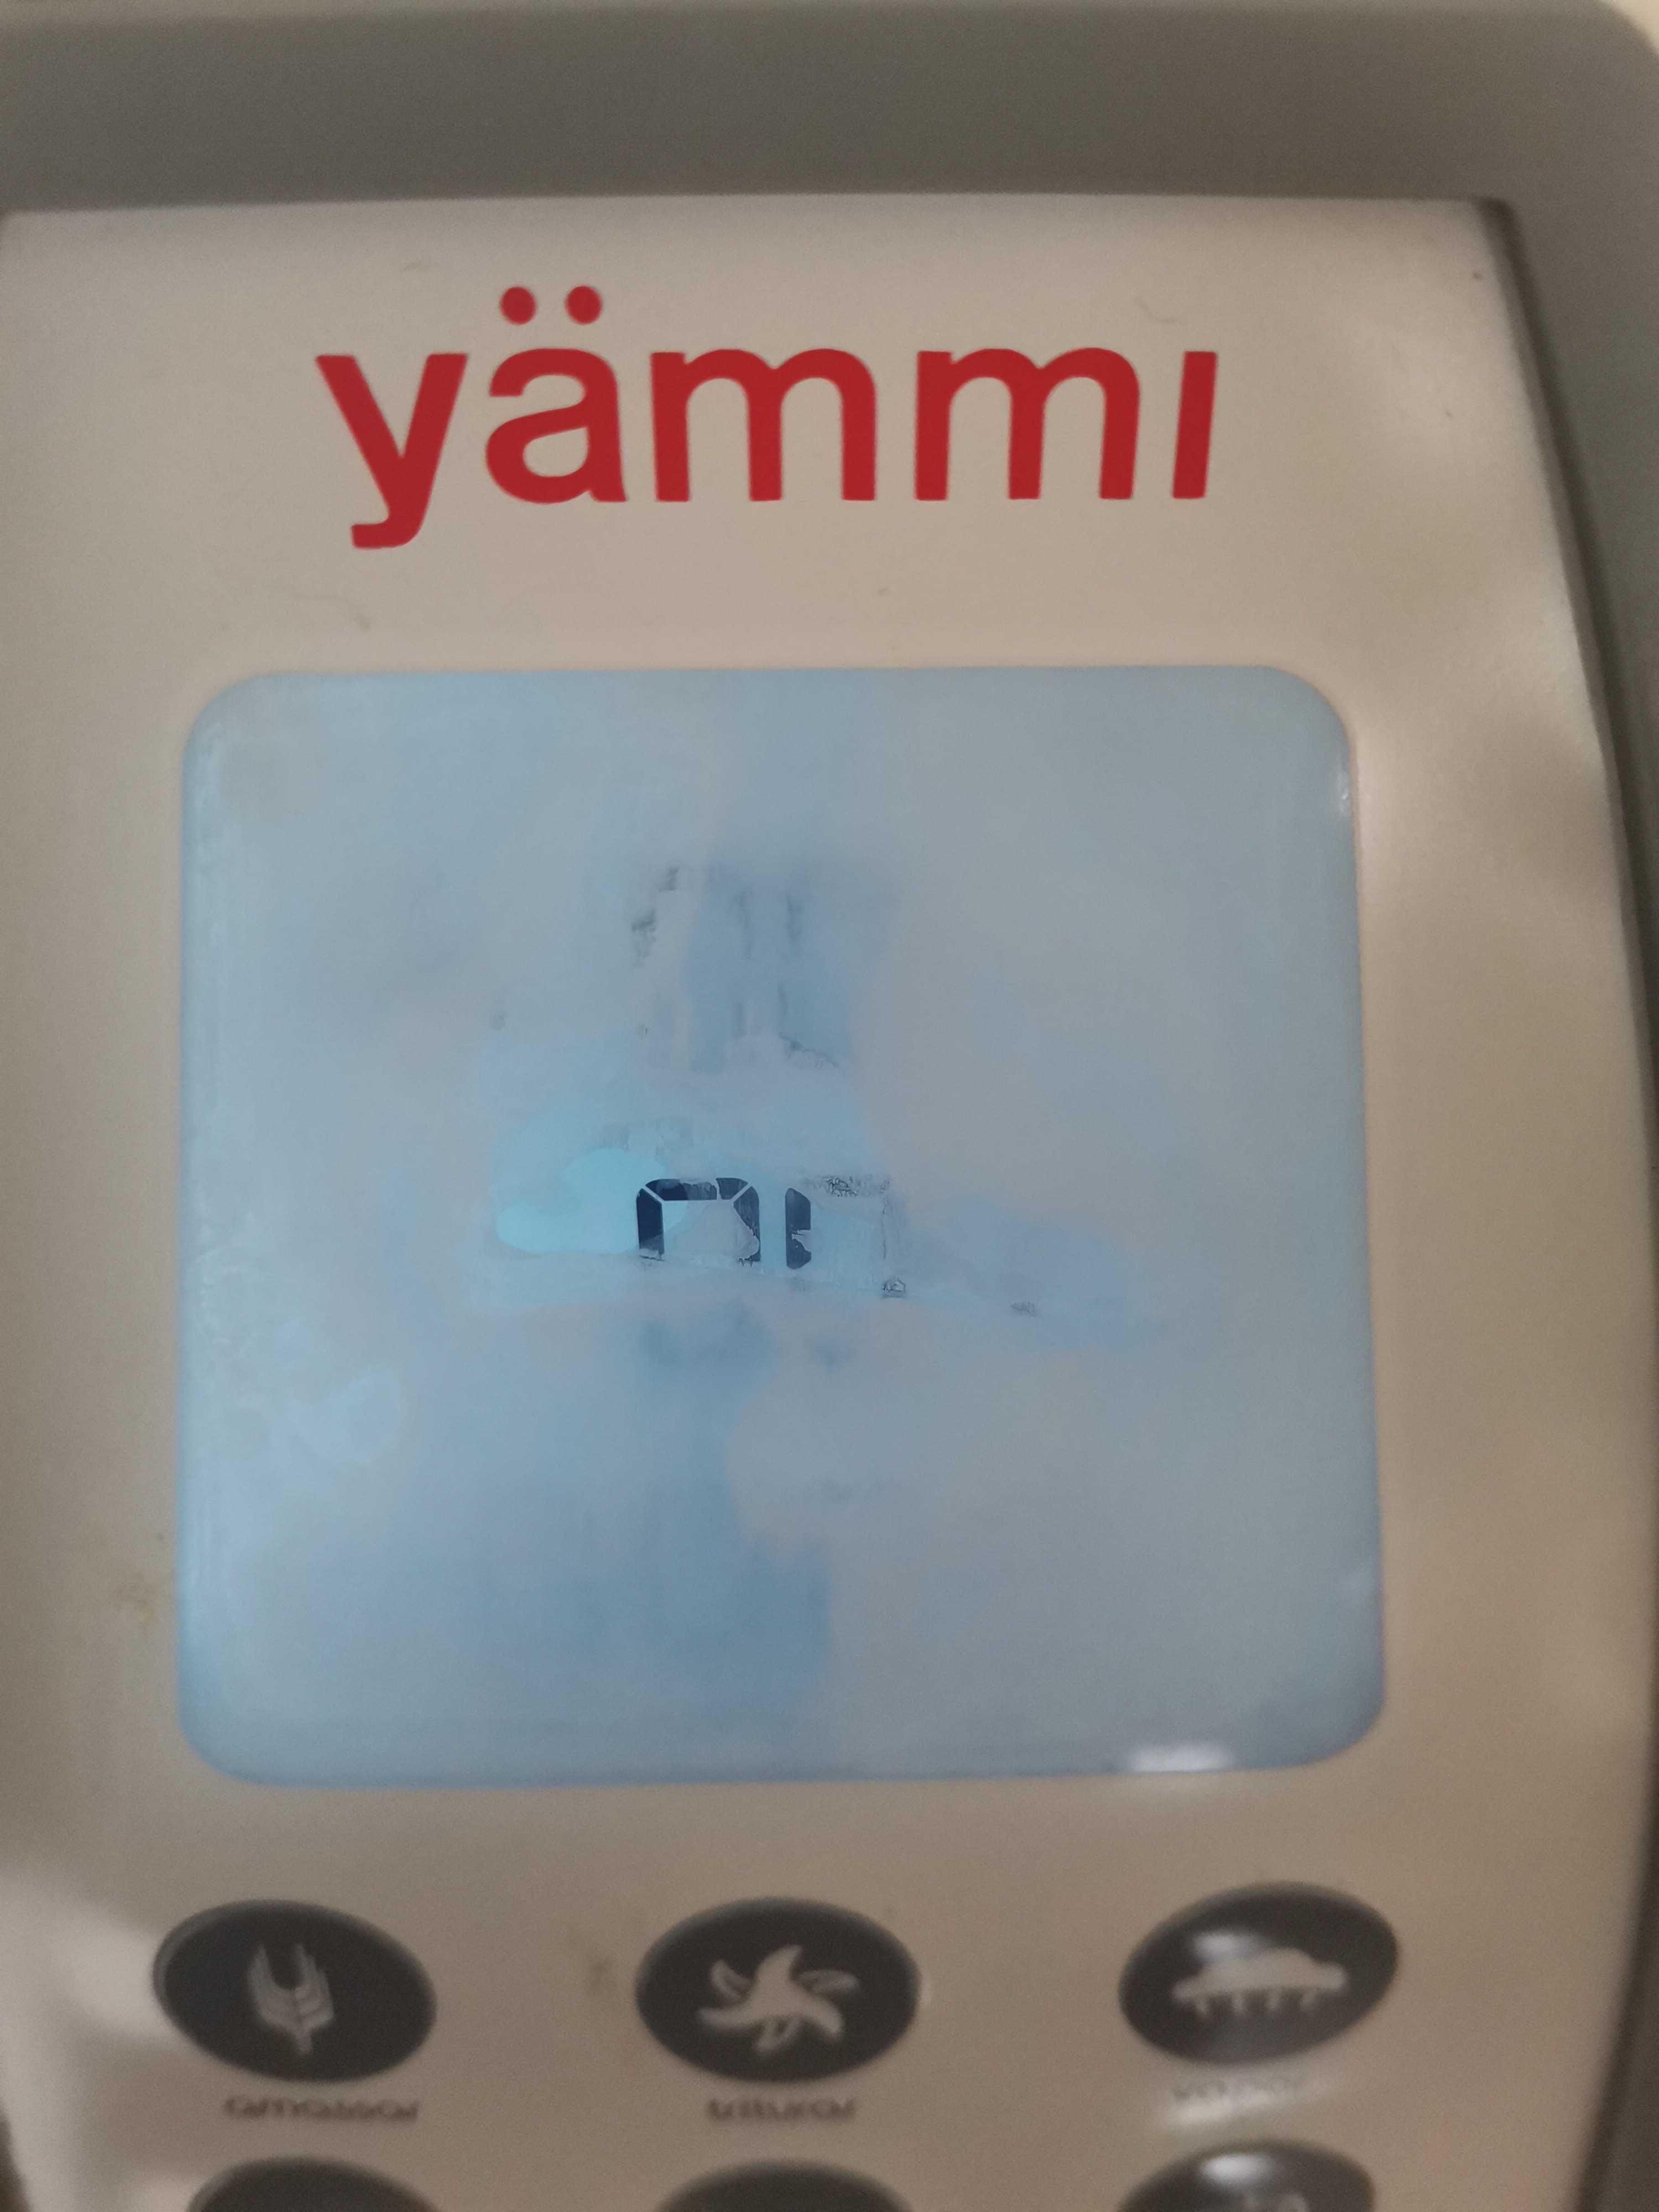 Vendo YAMMI 2 nunca utilizada